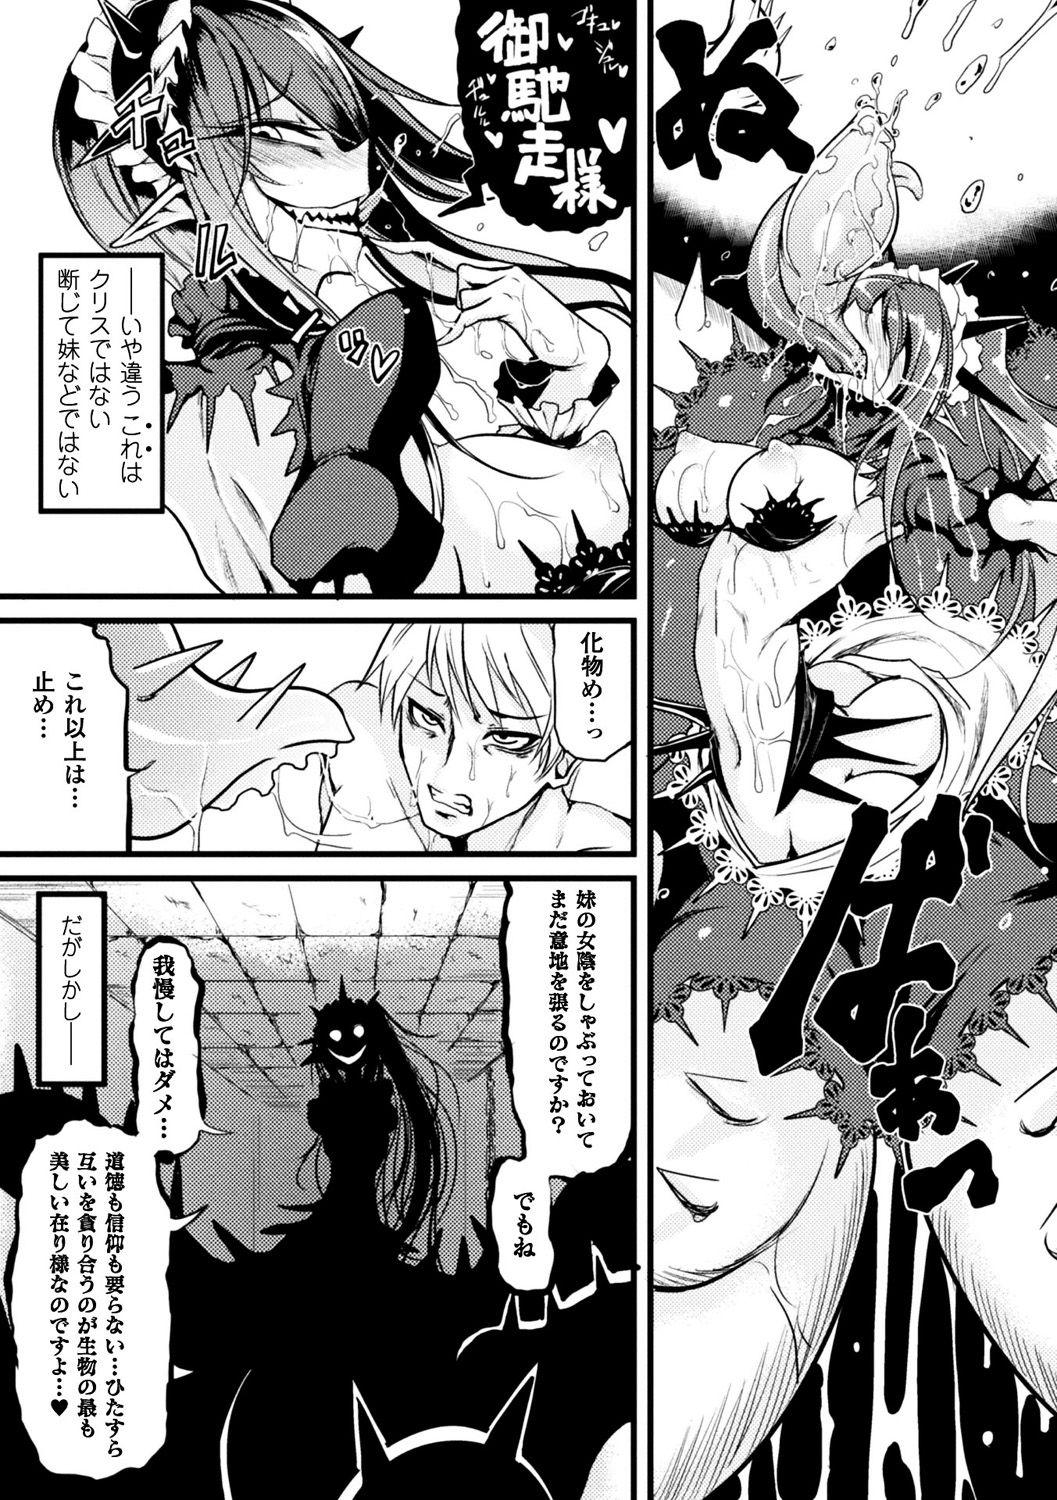 Bessatsu Comic Unreal Monster Musume Paradise Digital Ban Vol. 9 32